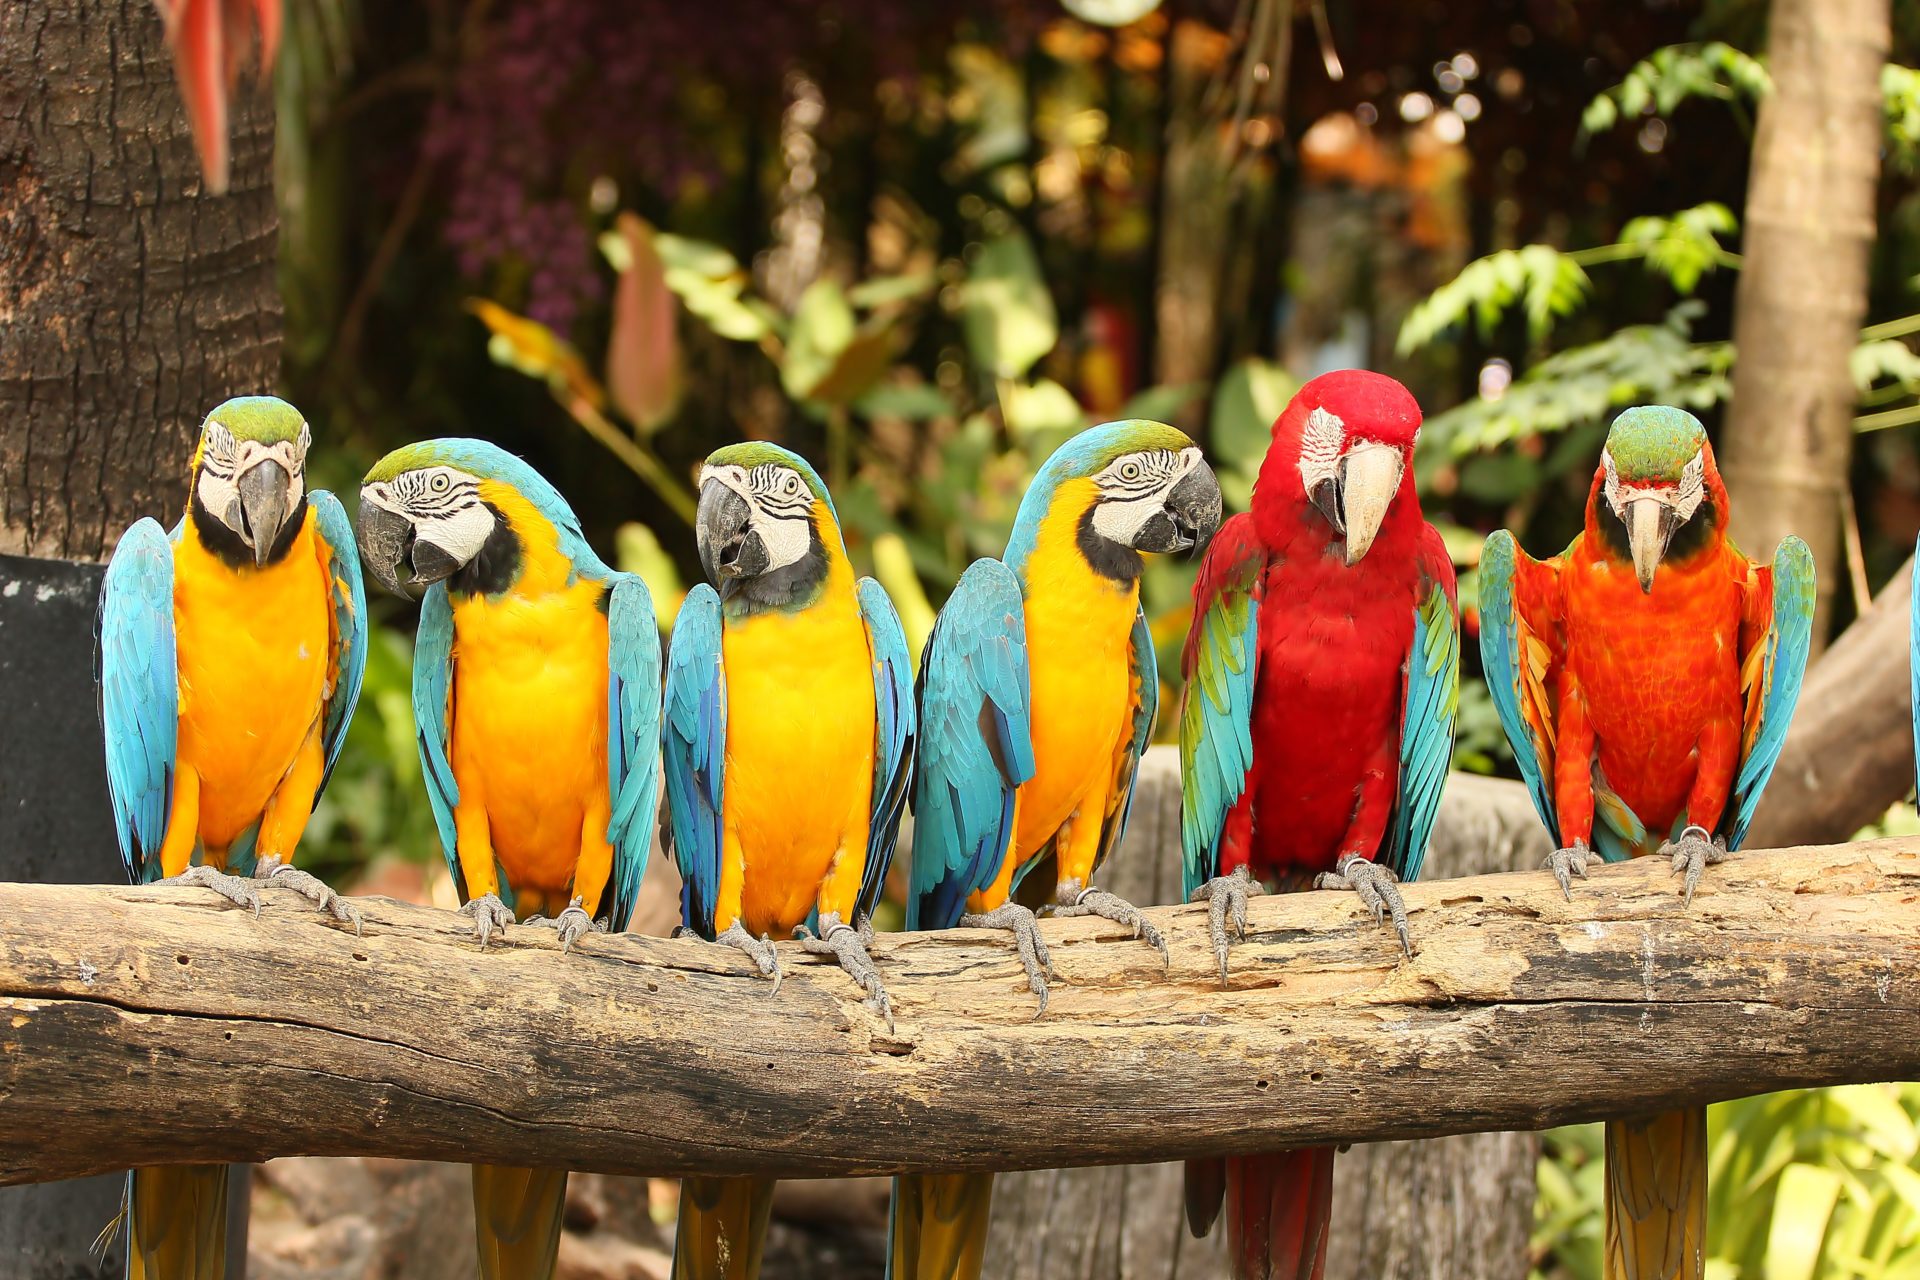 Hayvanat bahçesinin rengarenk papağanları kış aylarında da yaz koşullarında yaşıyor